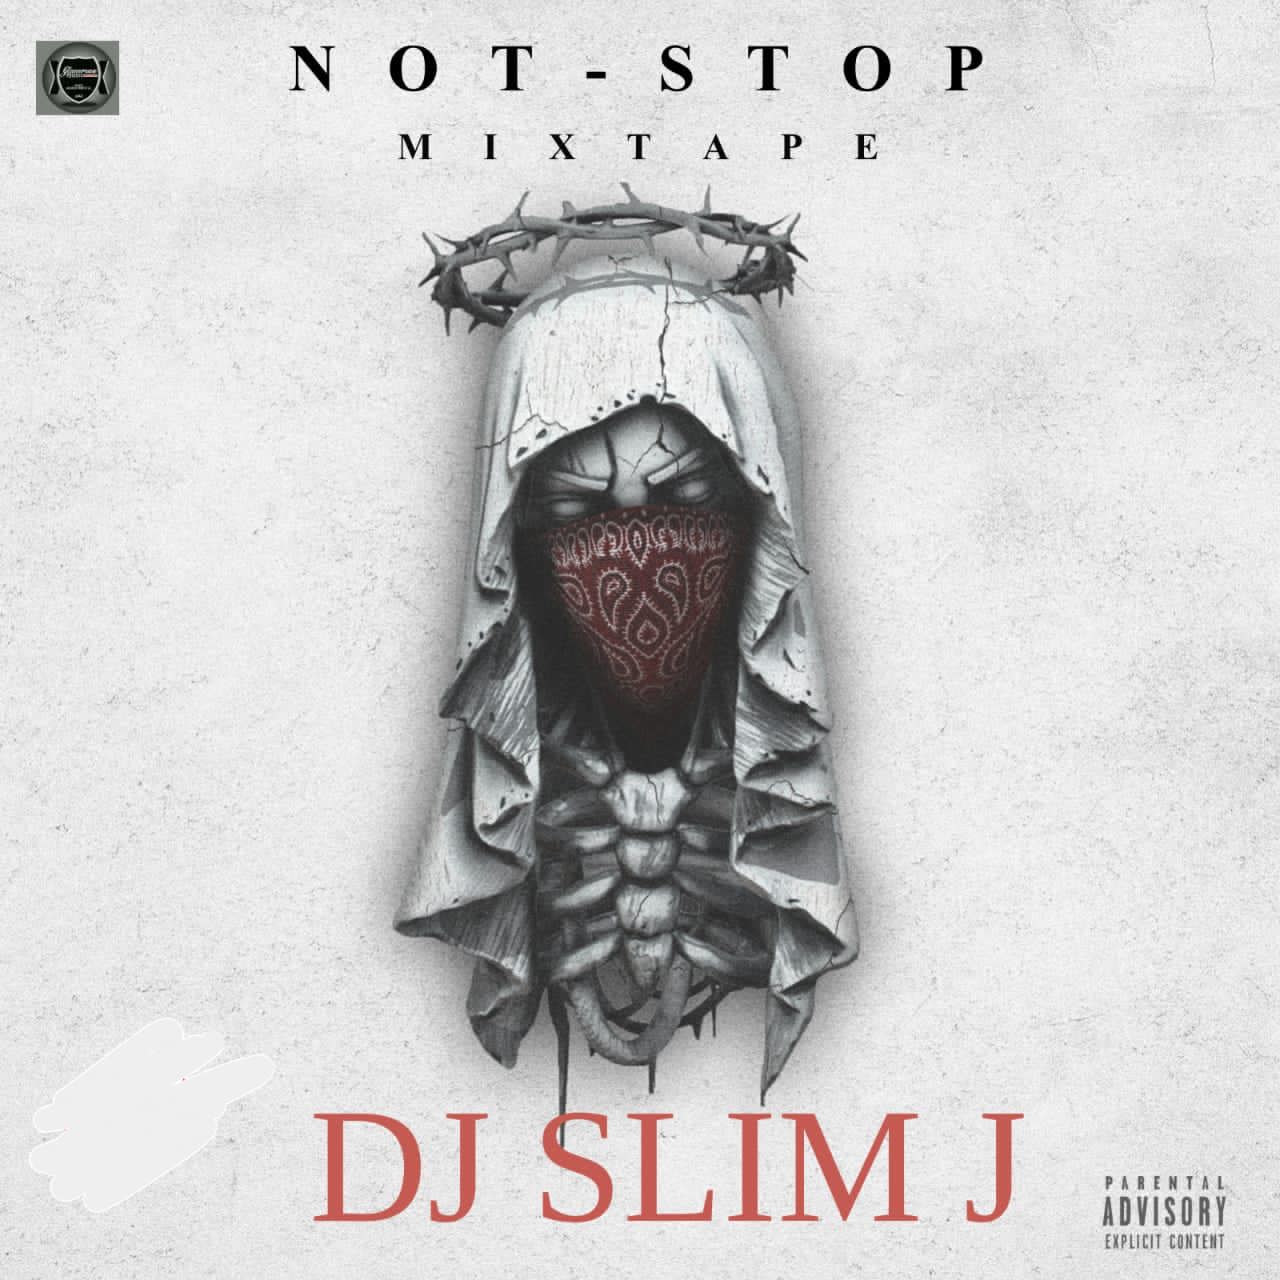 [MIXTAPE] DJ SLIM J – NOT STOP MIXTAPE